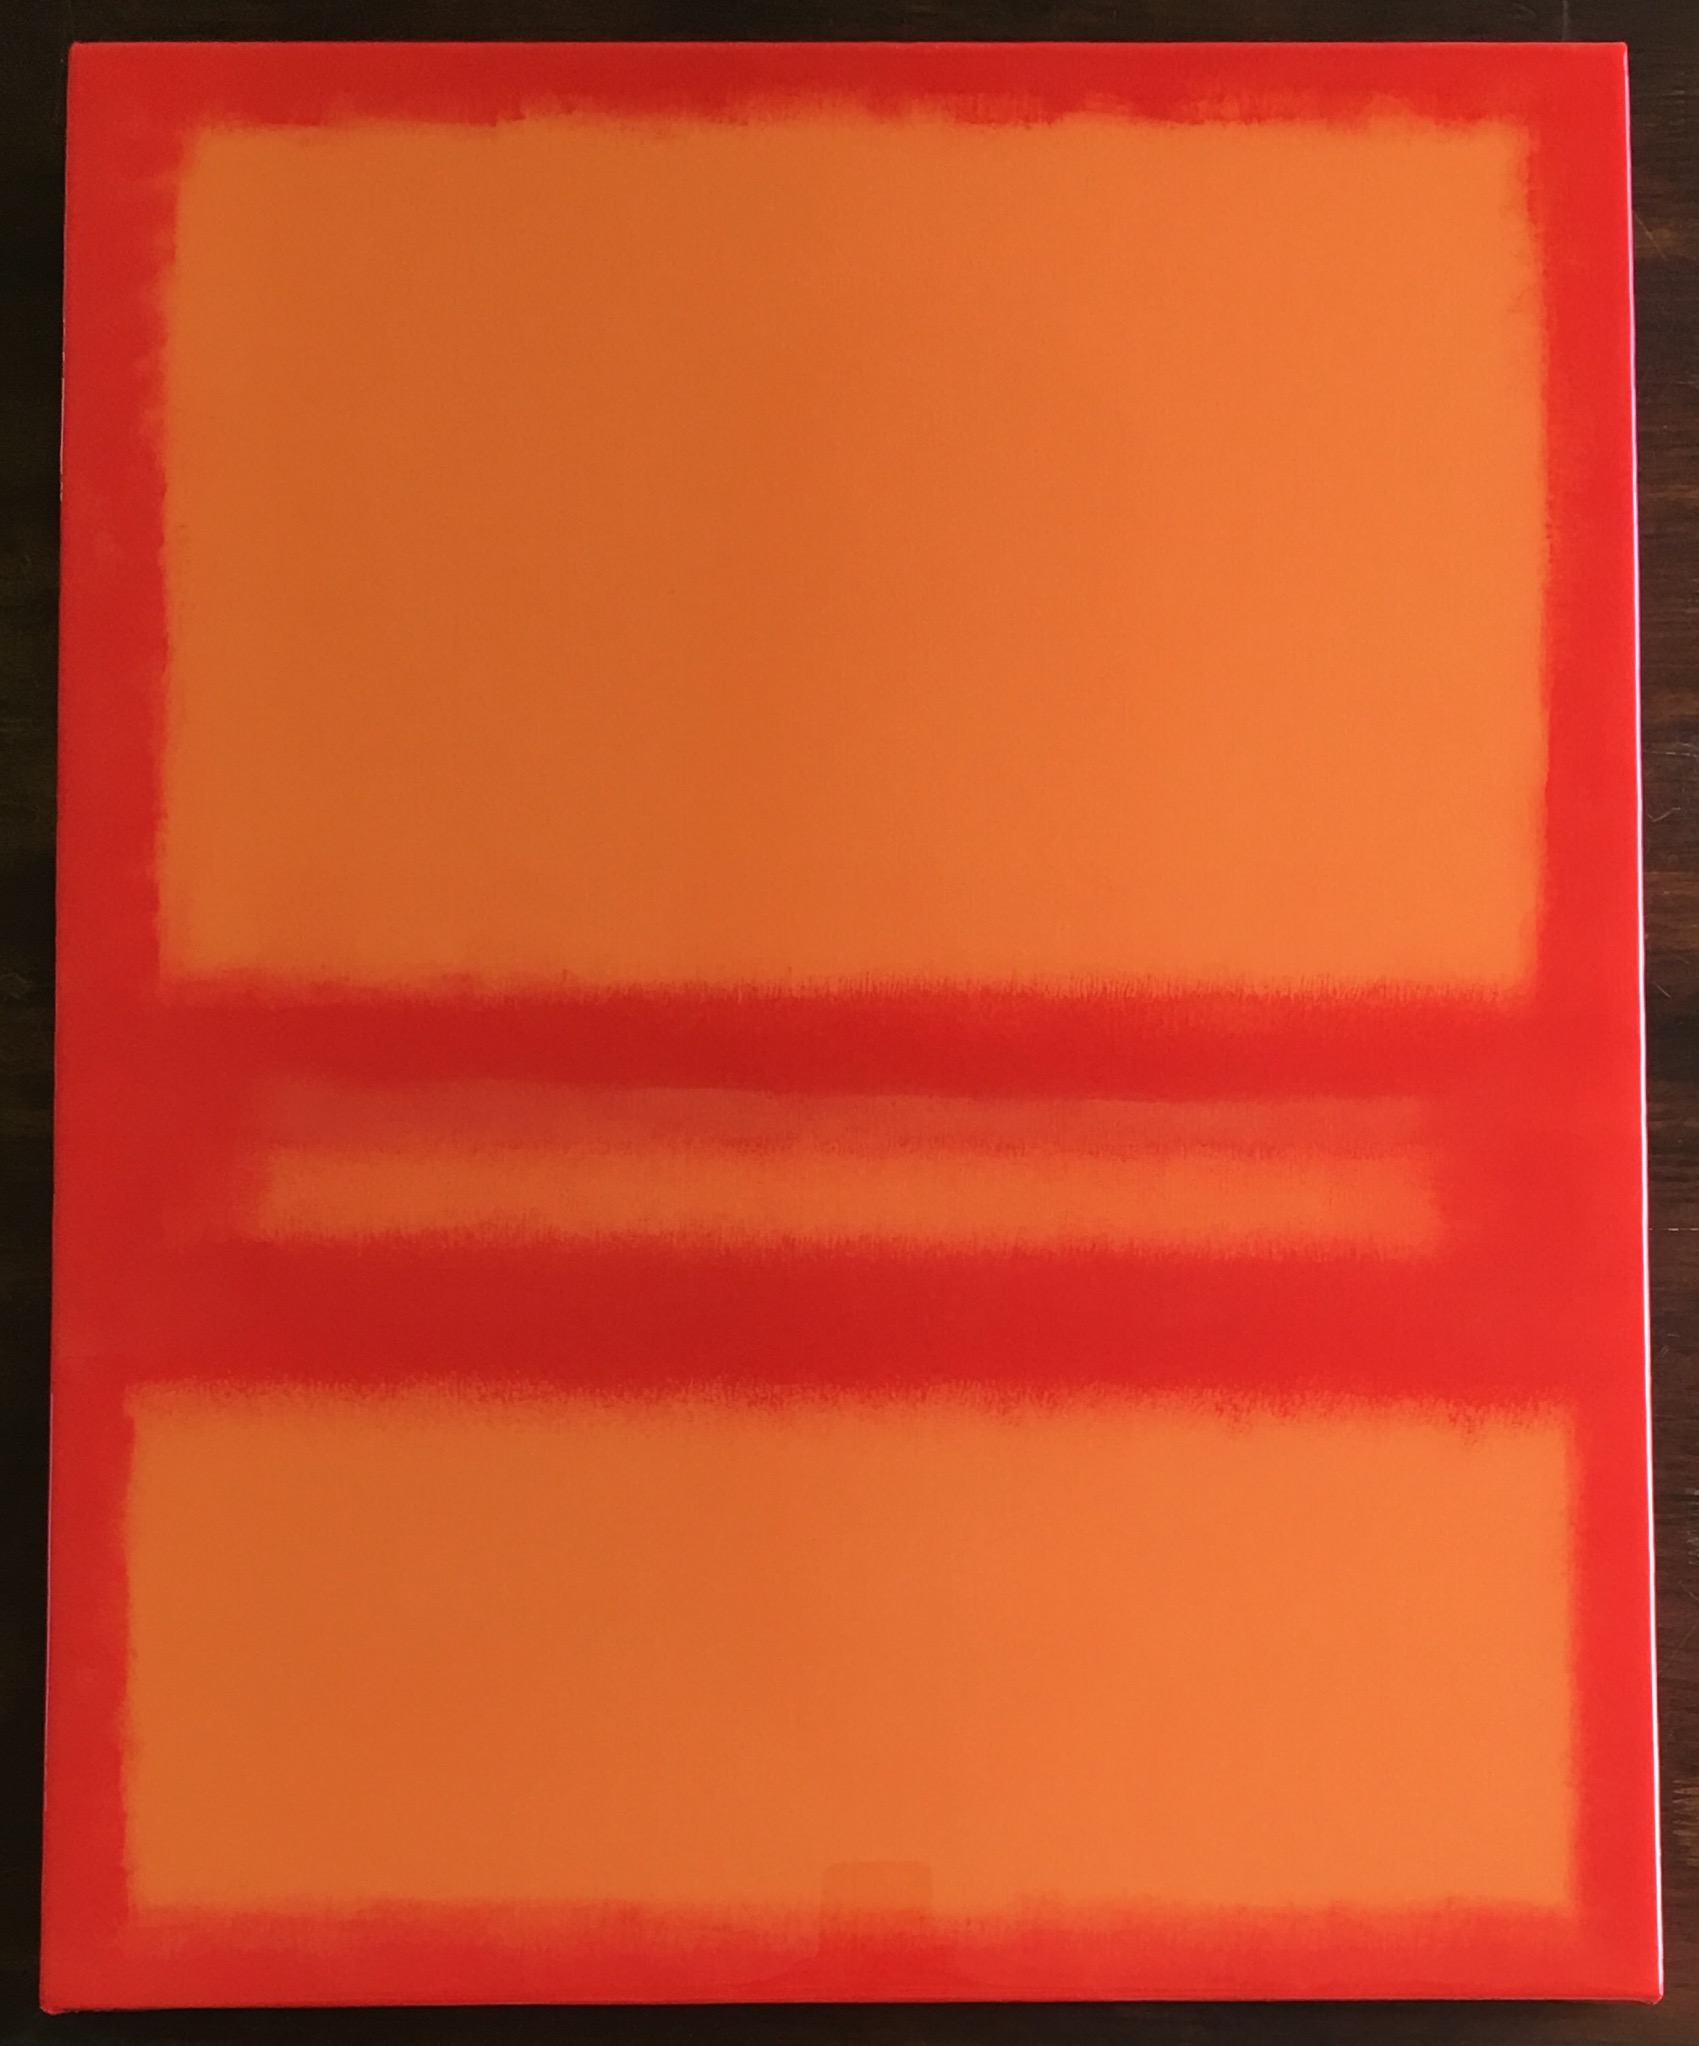 Poipu Sunset (Red/Orange) 5/10/19